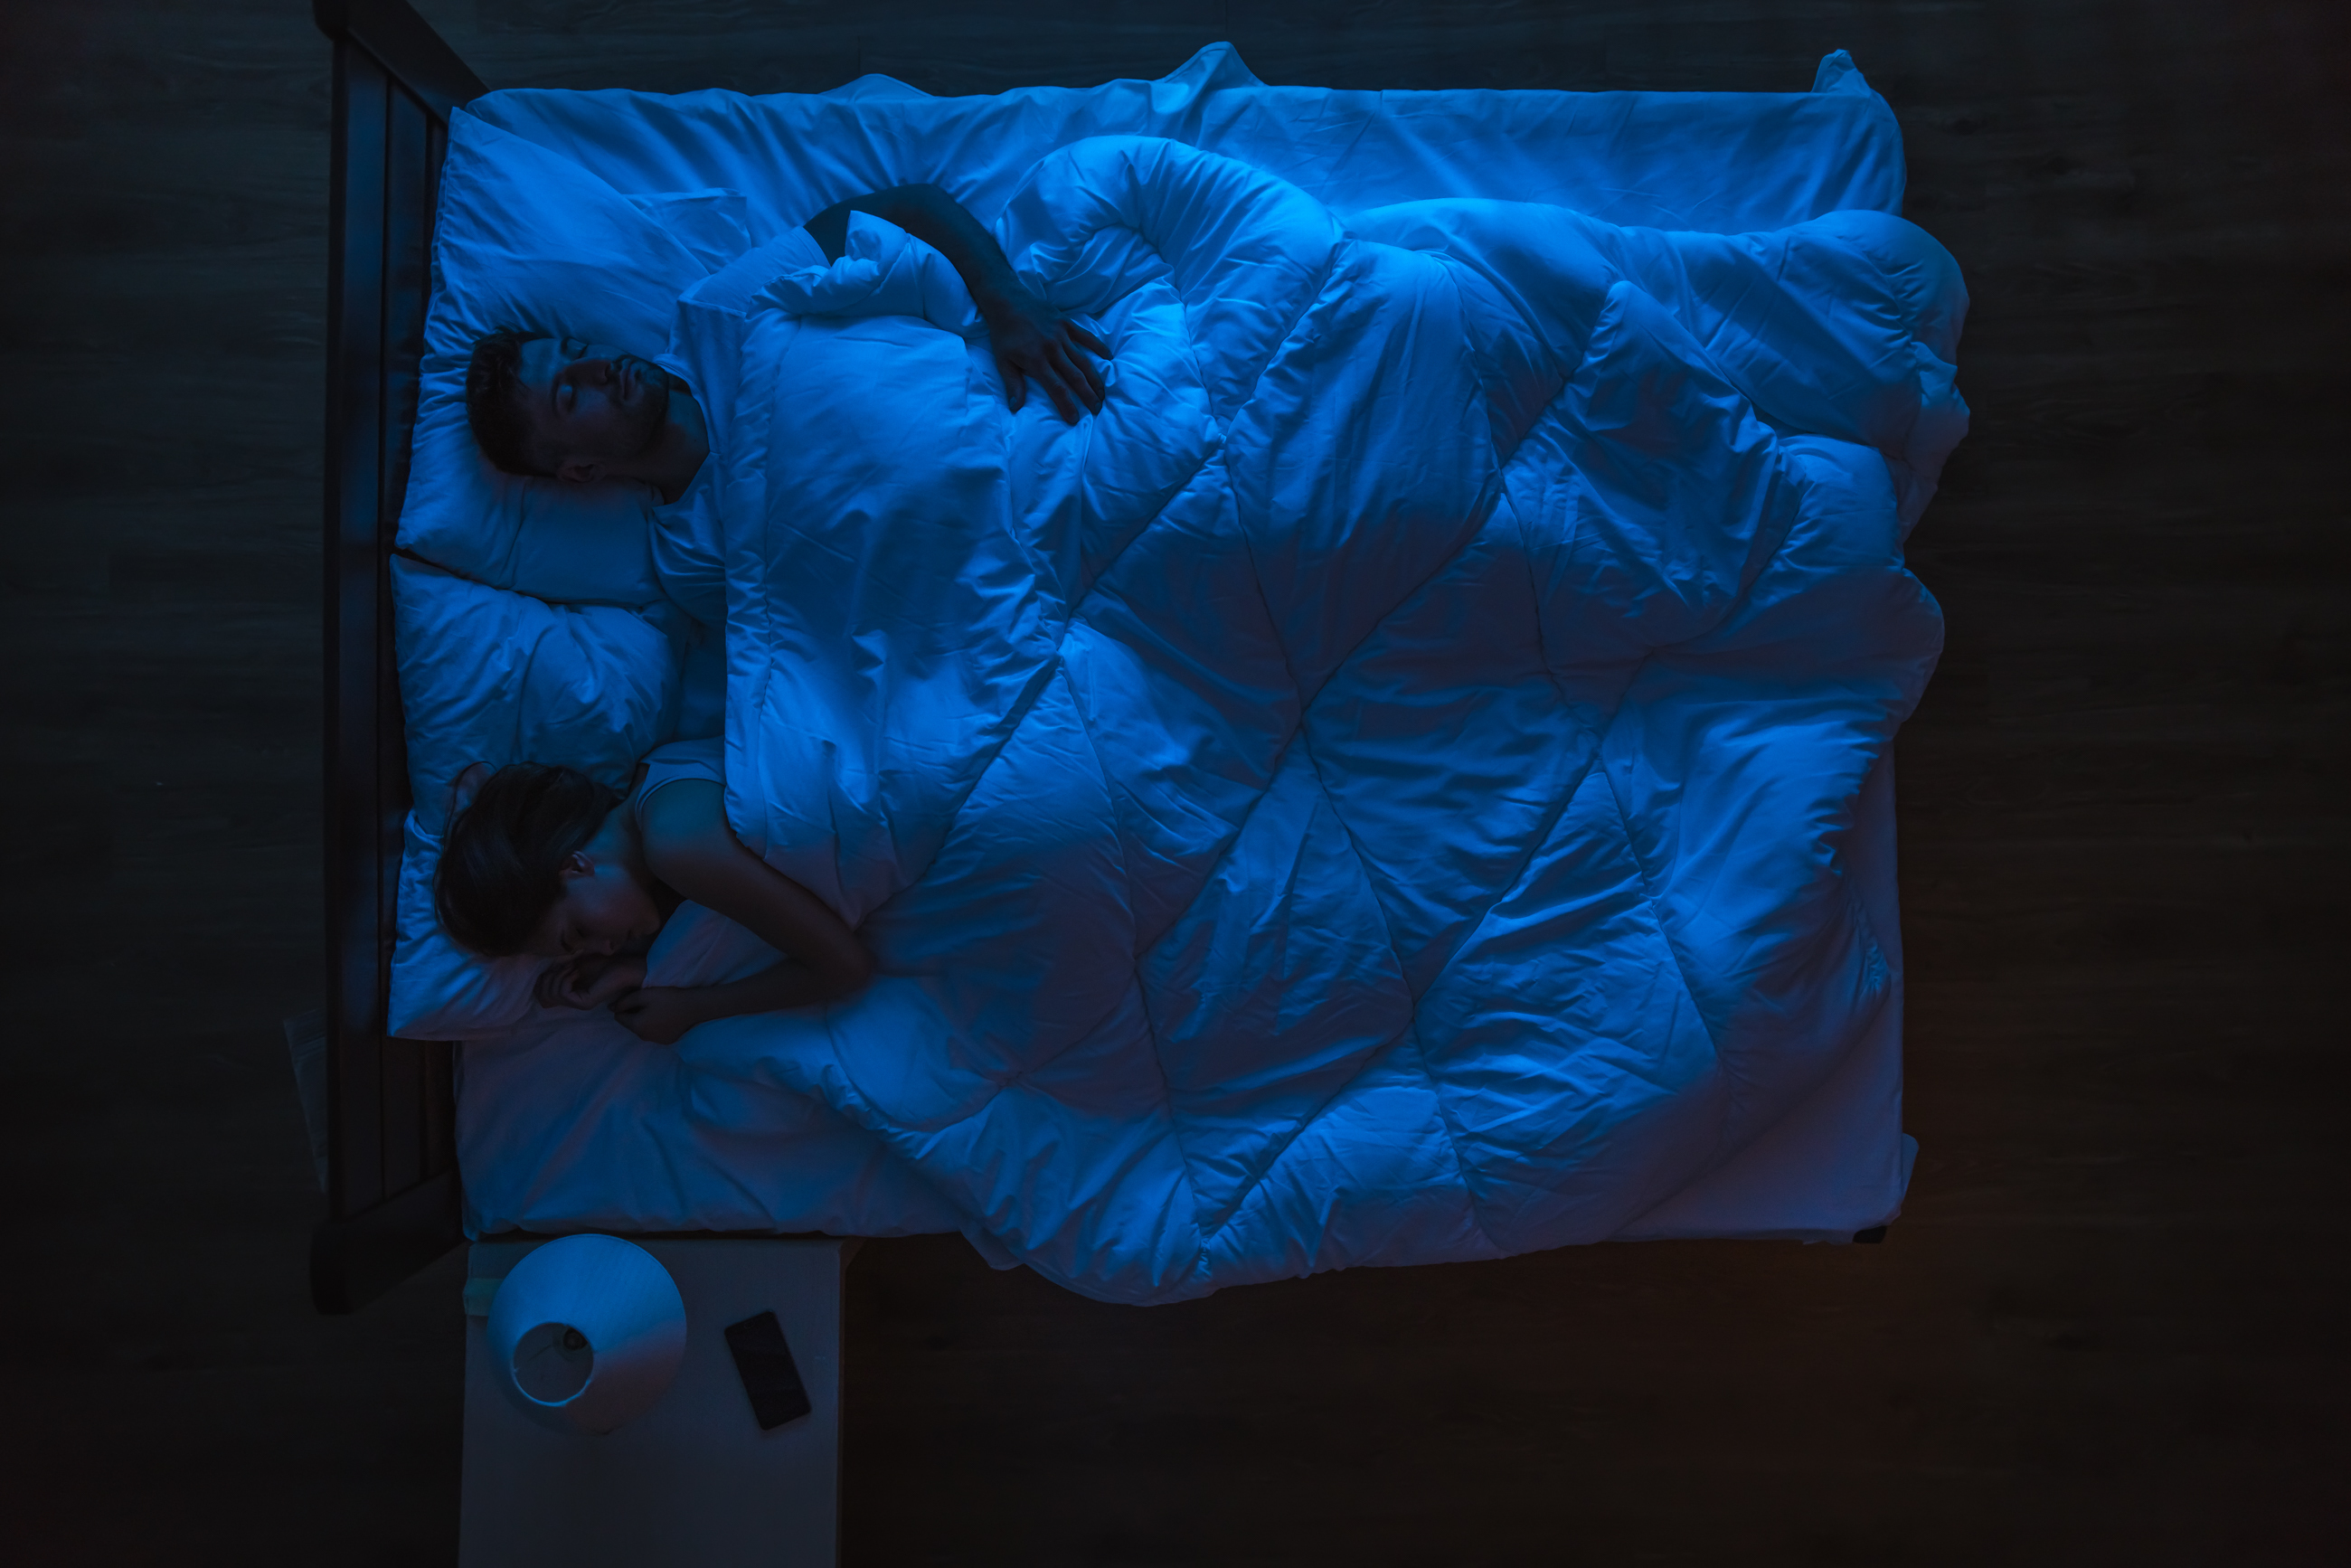 Le couple dormant sur un lit. Le soir, à l'heure de la nuit. | Source : Shutterstock